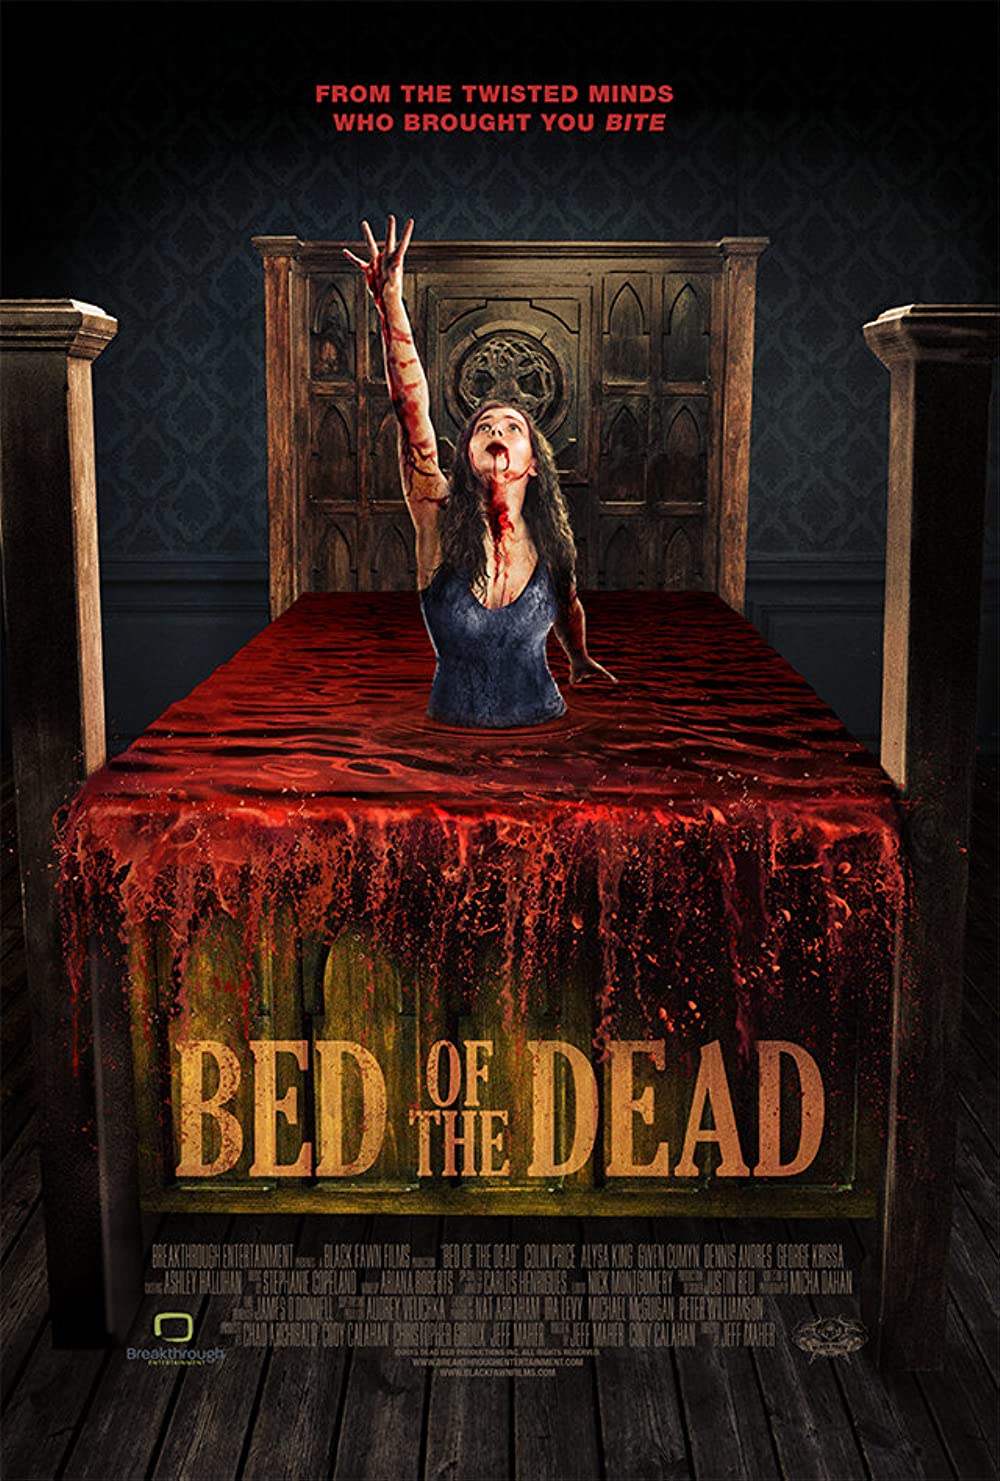 Filmbeschreibung zu Bed of the Dead